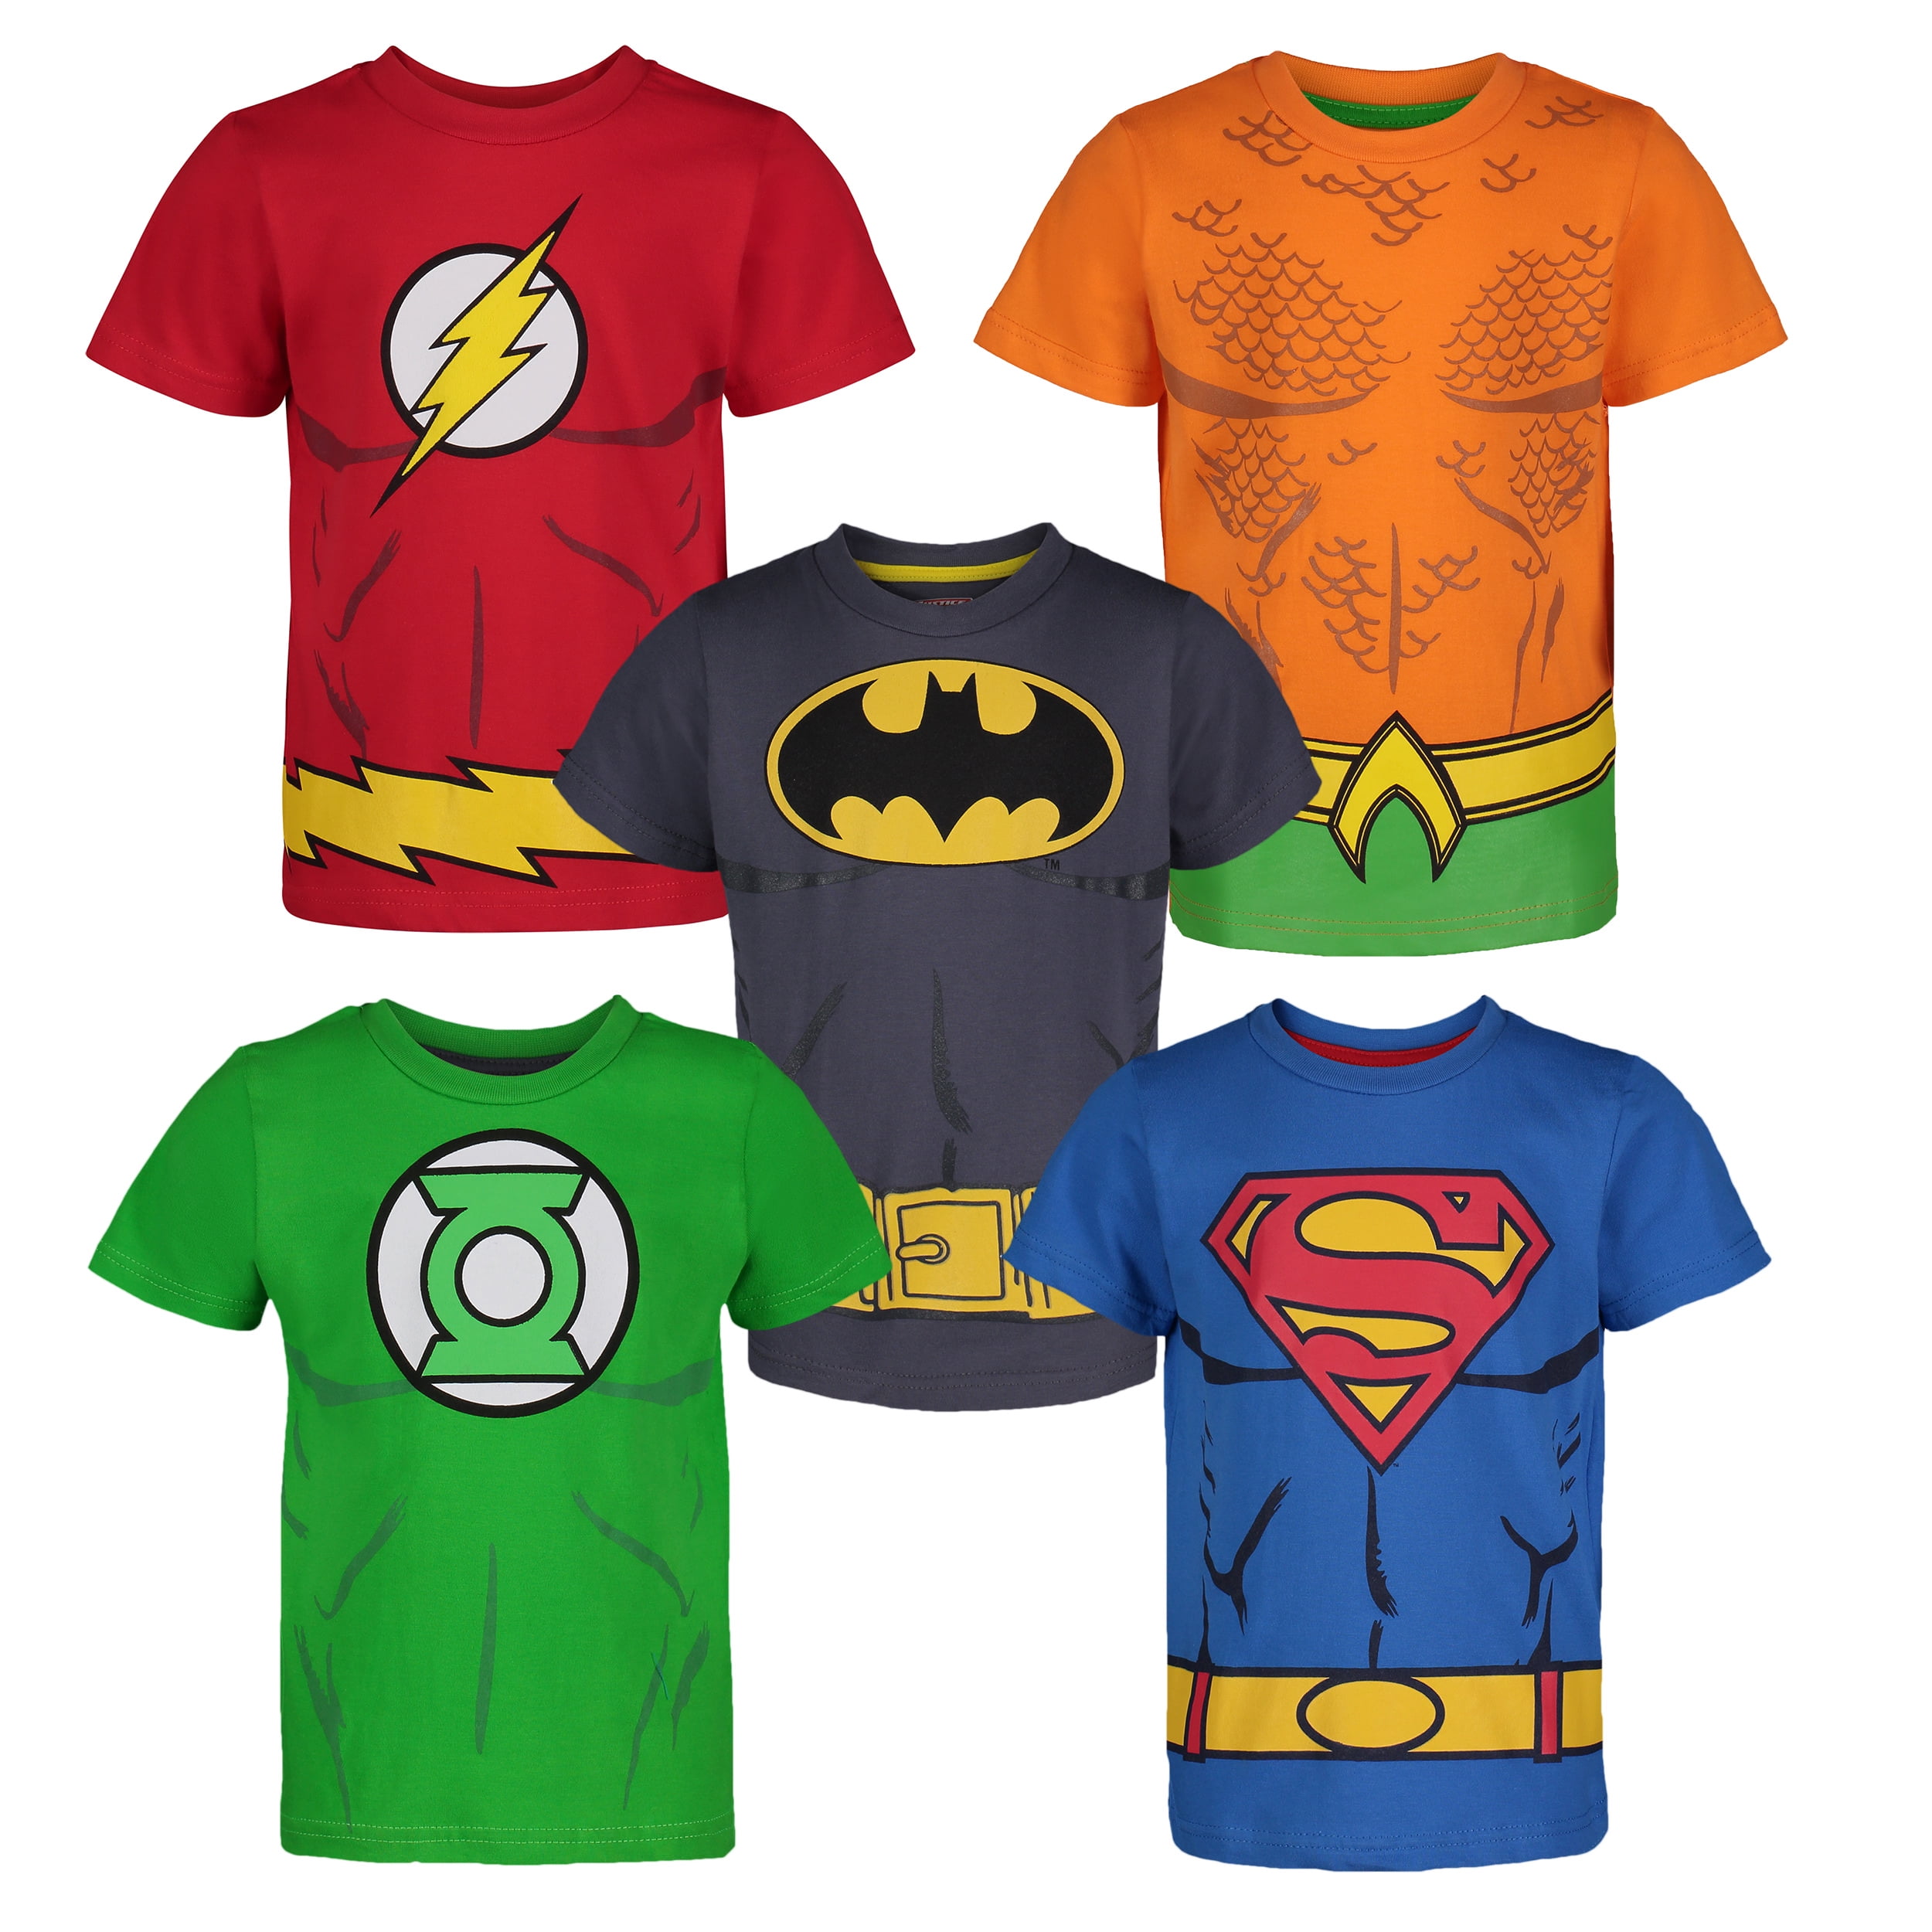 Superheroes pack. Бэтмен и Супермен футболка. Бэтмен и Супермен футболка детская. Футболка лига справедливости. Майка Justice is Comics.